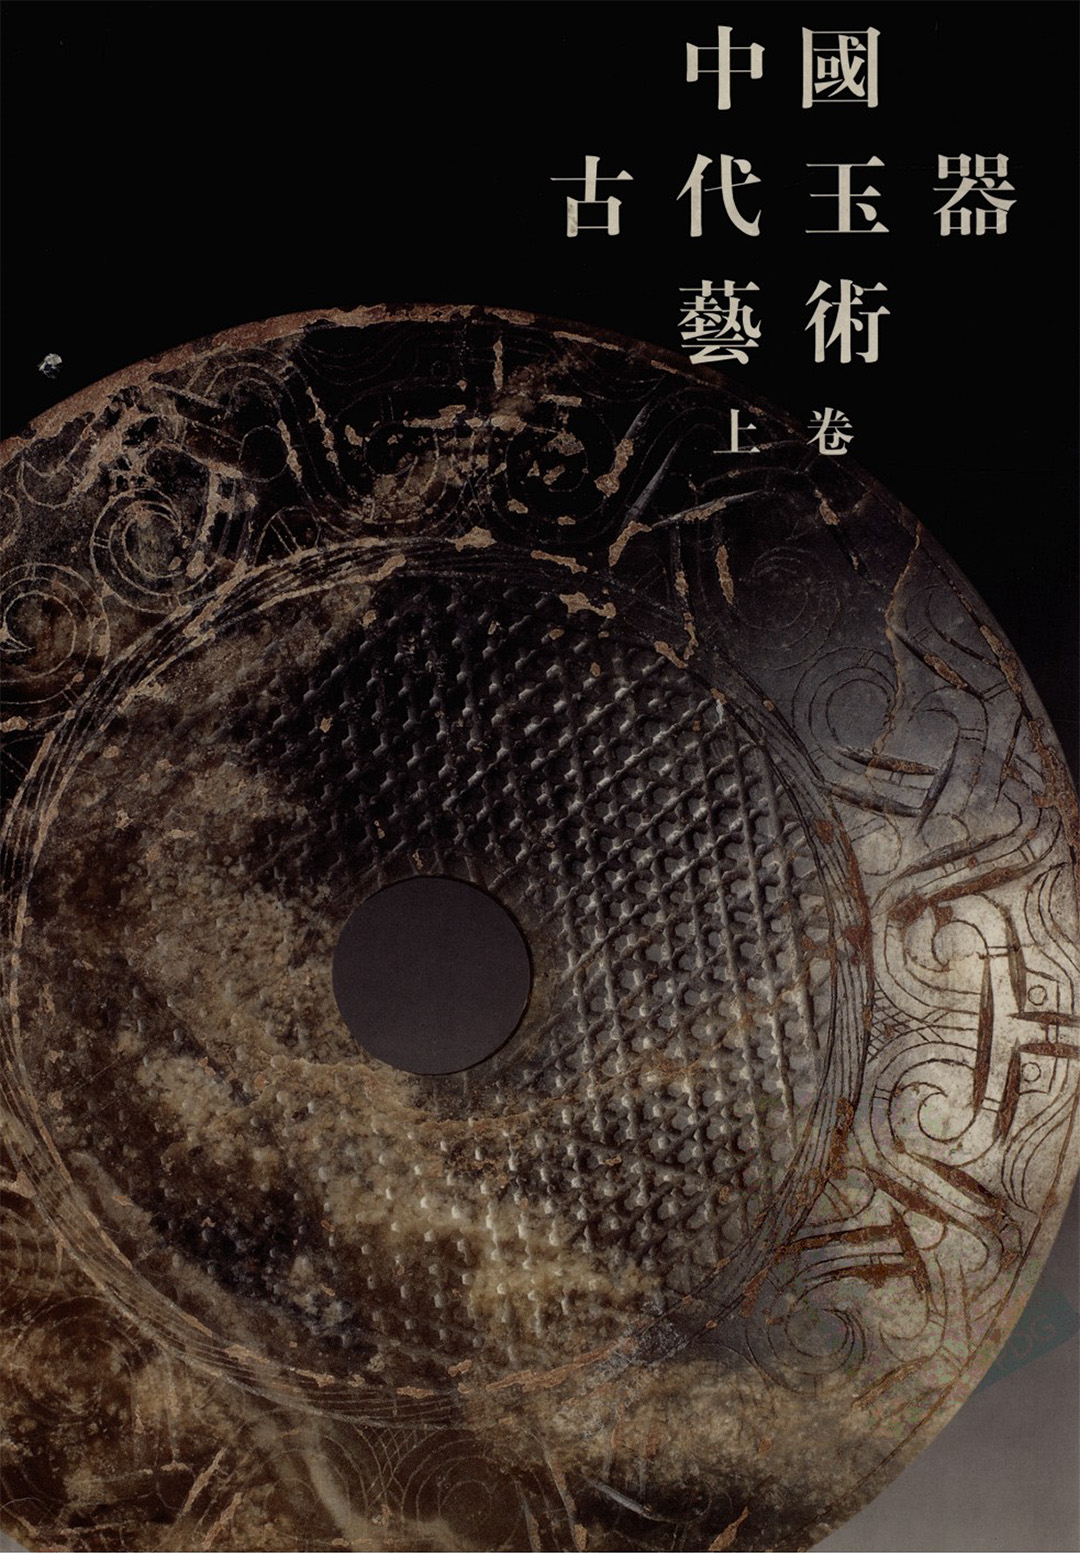 《中国古代玉器艺术》玉雕工艺品